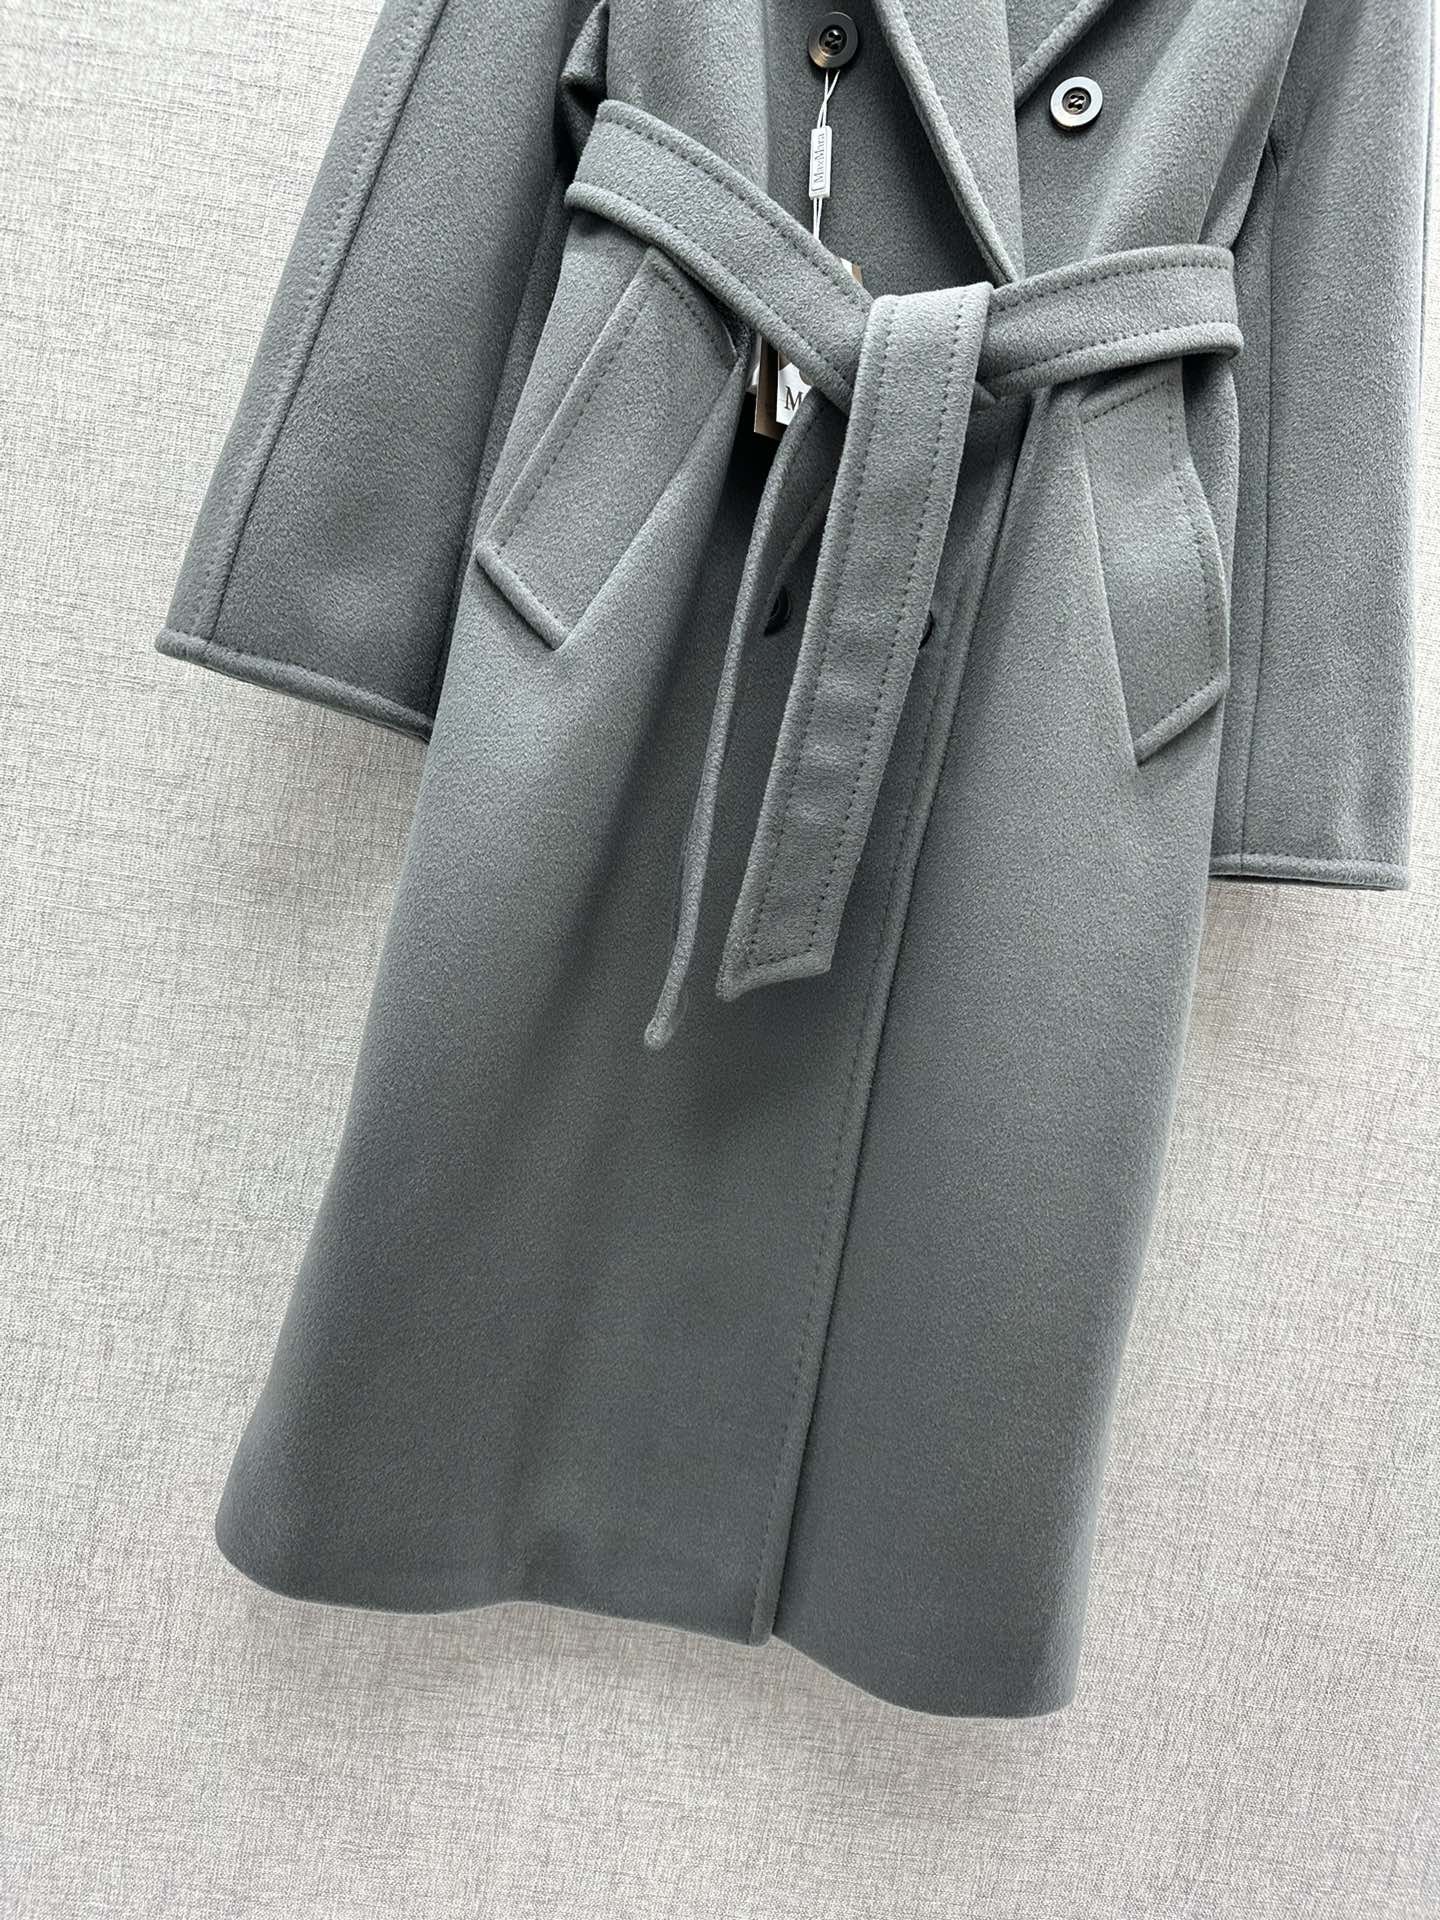 Кашемировое пальто женское фото 5